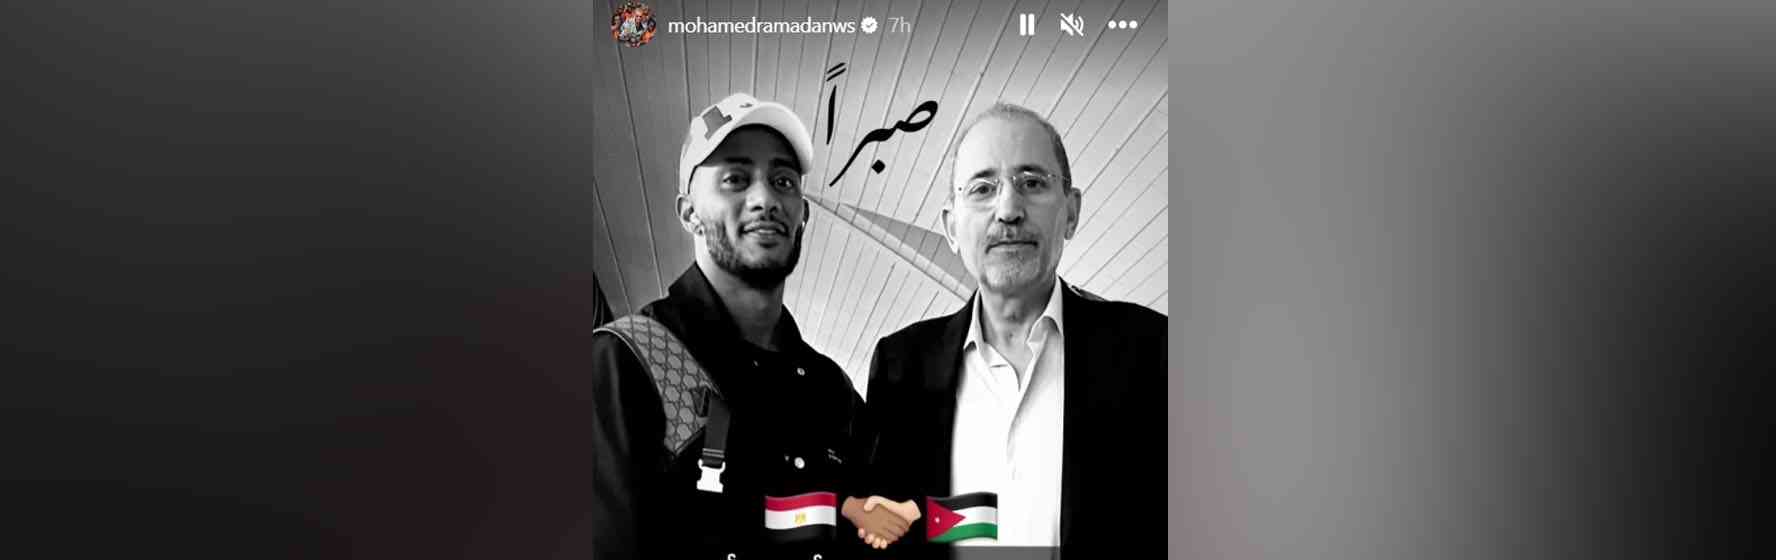 محمد رمضان مع أيمن الصفدي.. ورسالة للأردن (صورة)